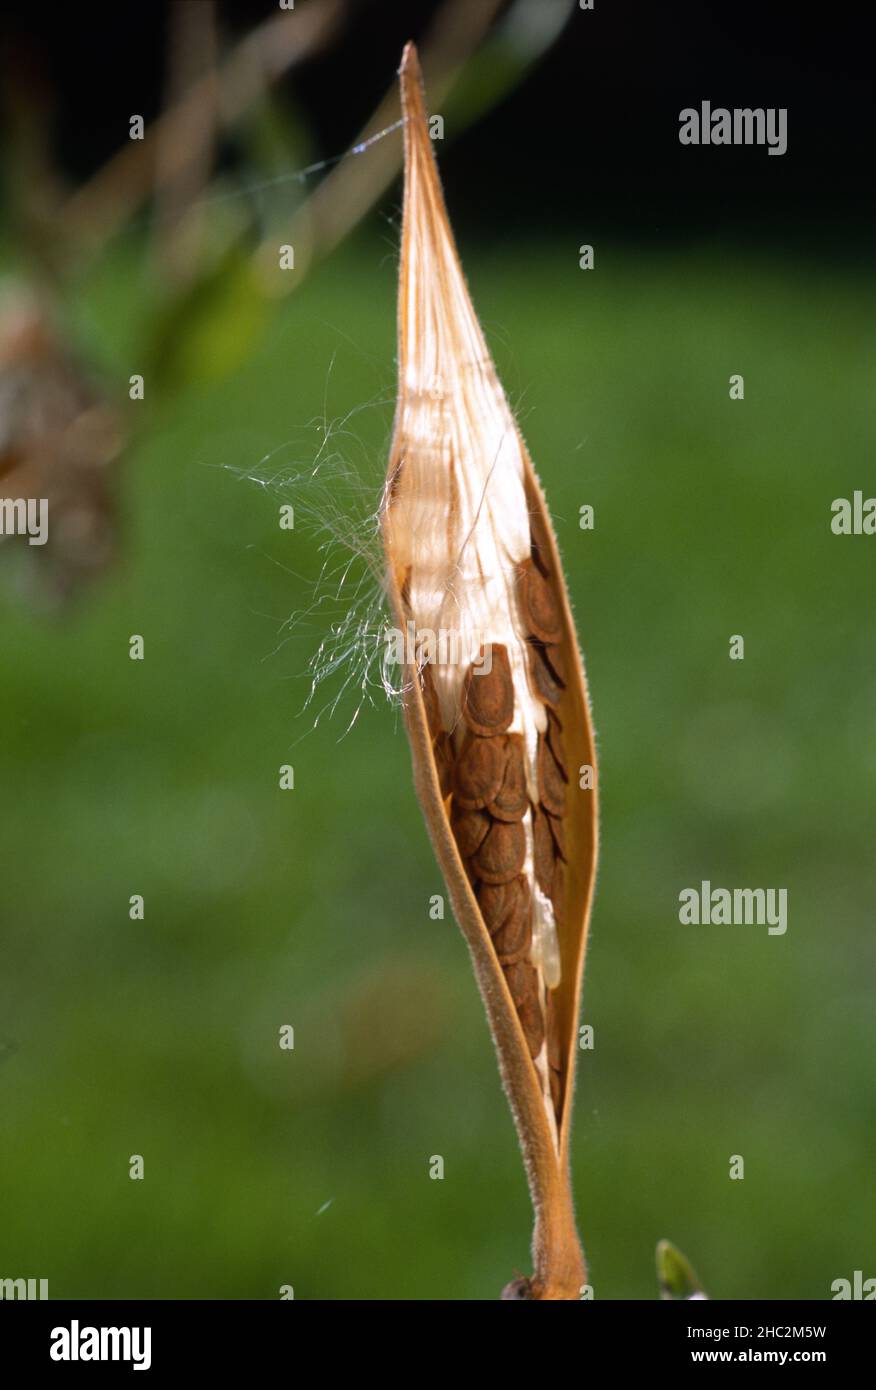 Se abre una vaina de semillas de maleza suave para revelar las semillas adheridas a filamentos sedosos en el interior, listas para ser tomadas en la brisa. Foto de stock